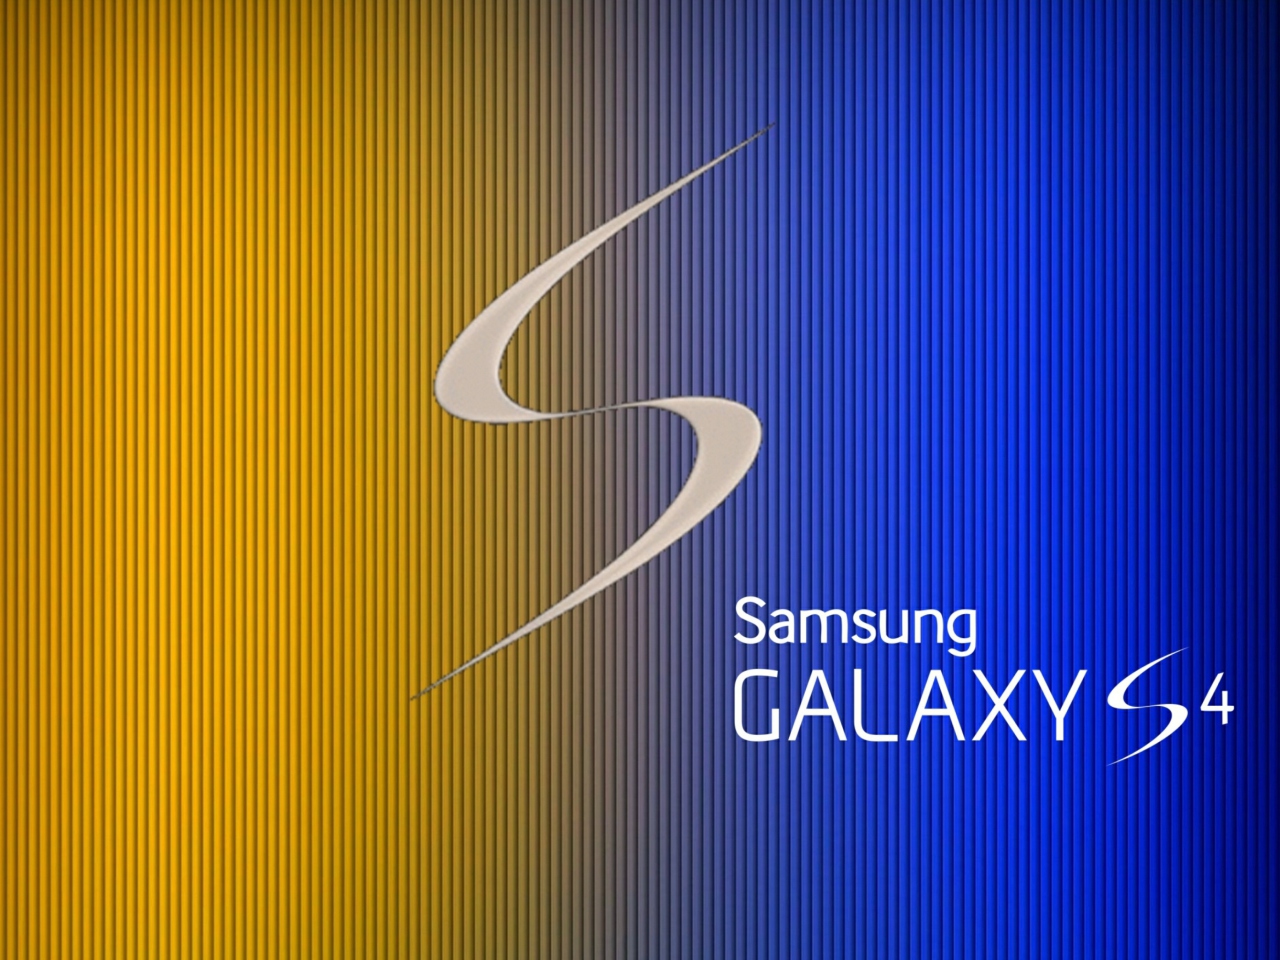 S Galaxy S4 wallpaper 1280x960